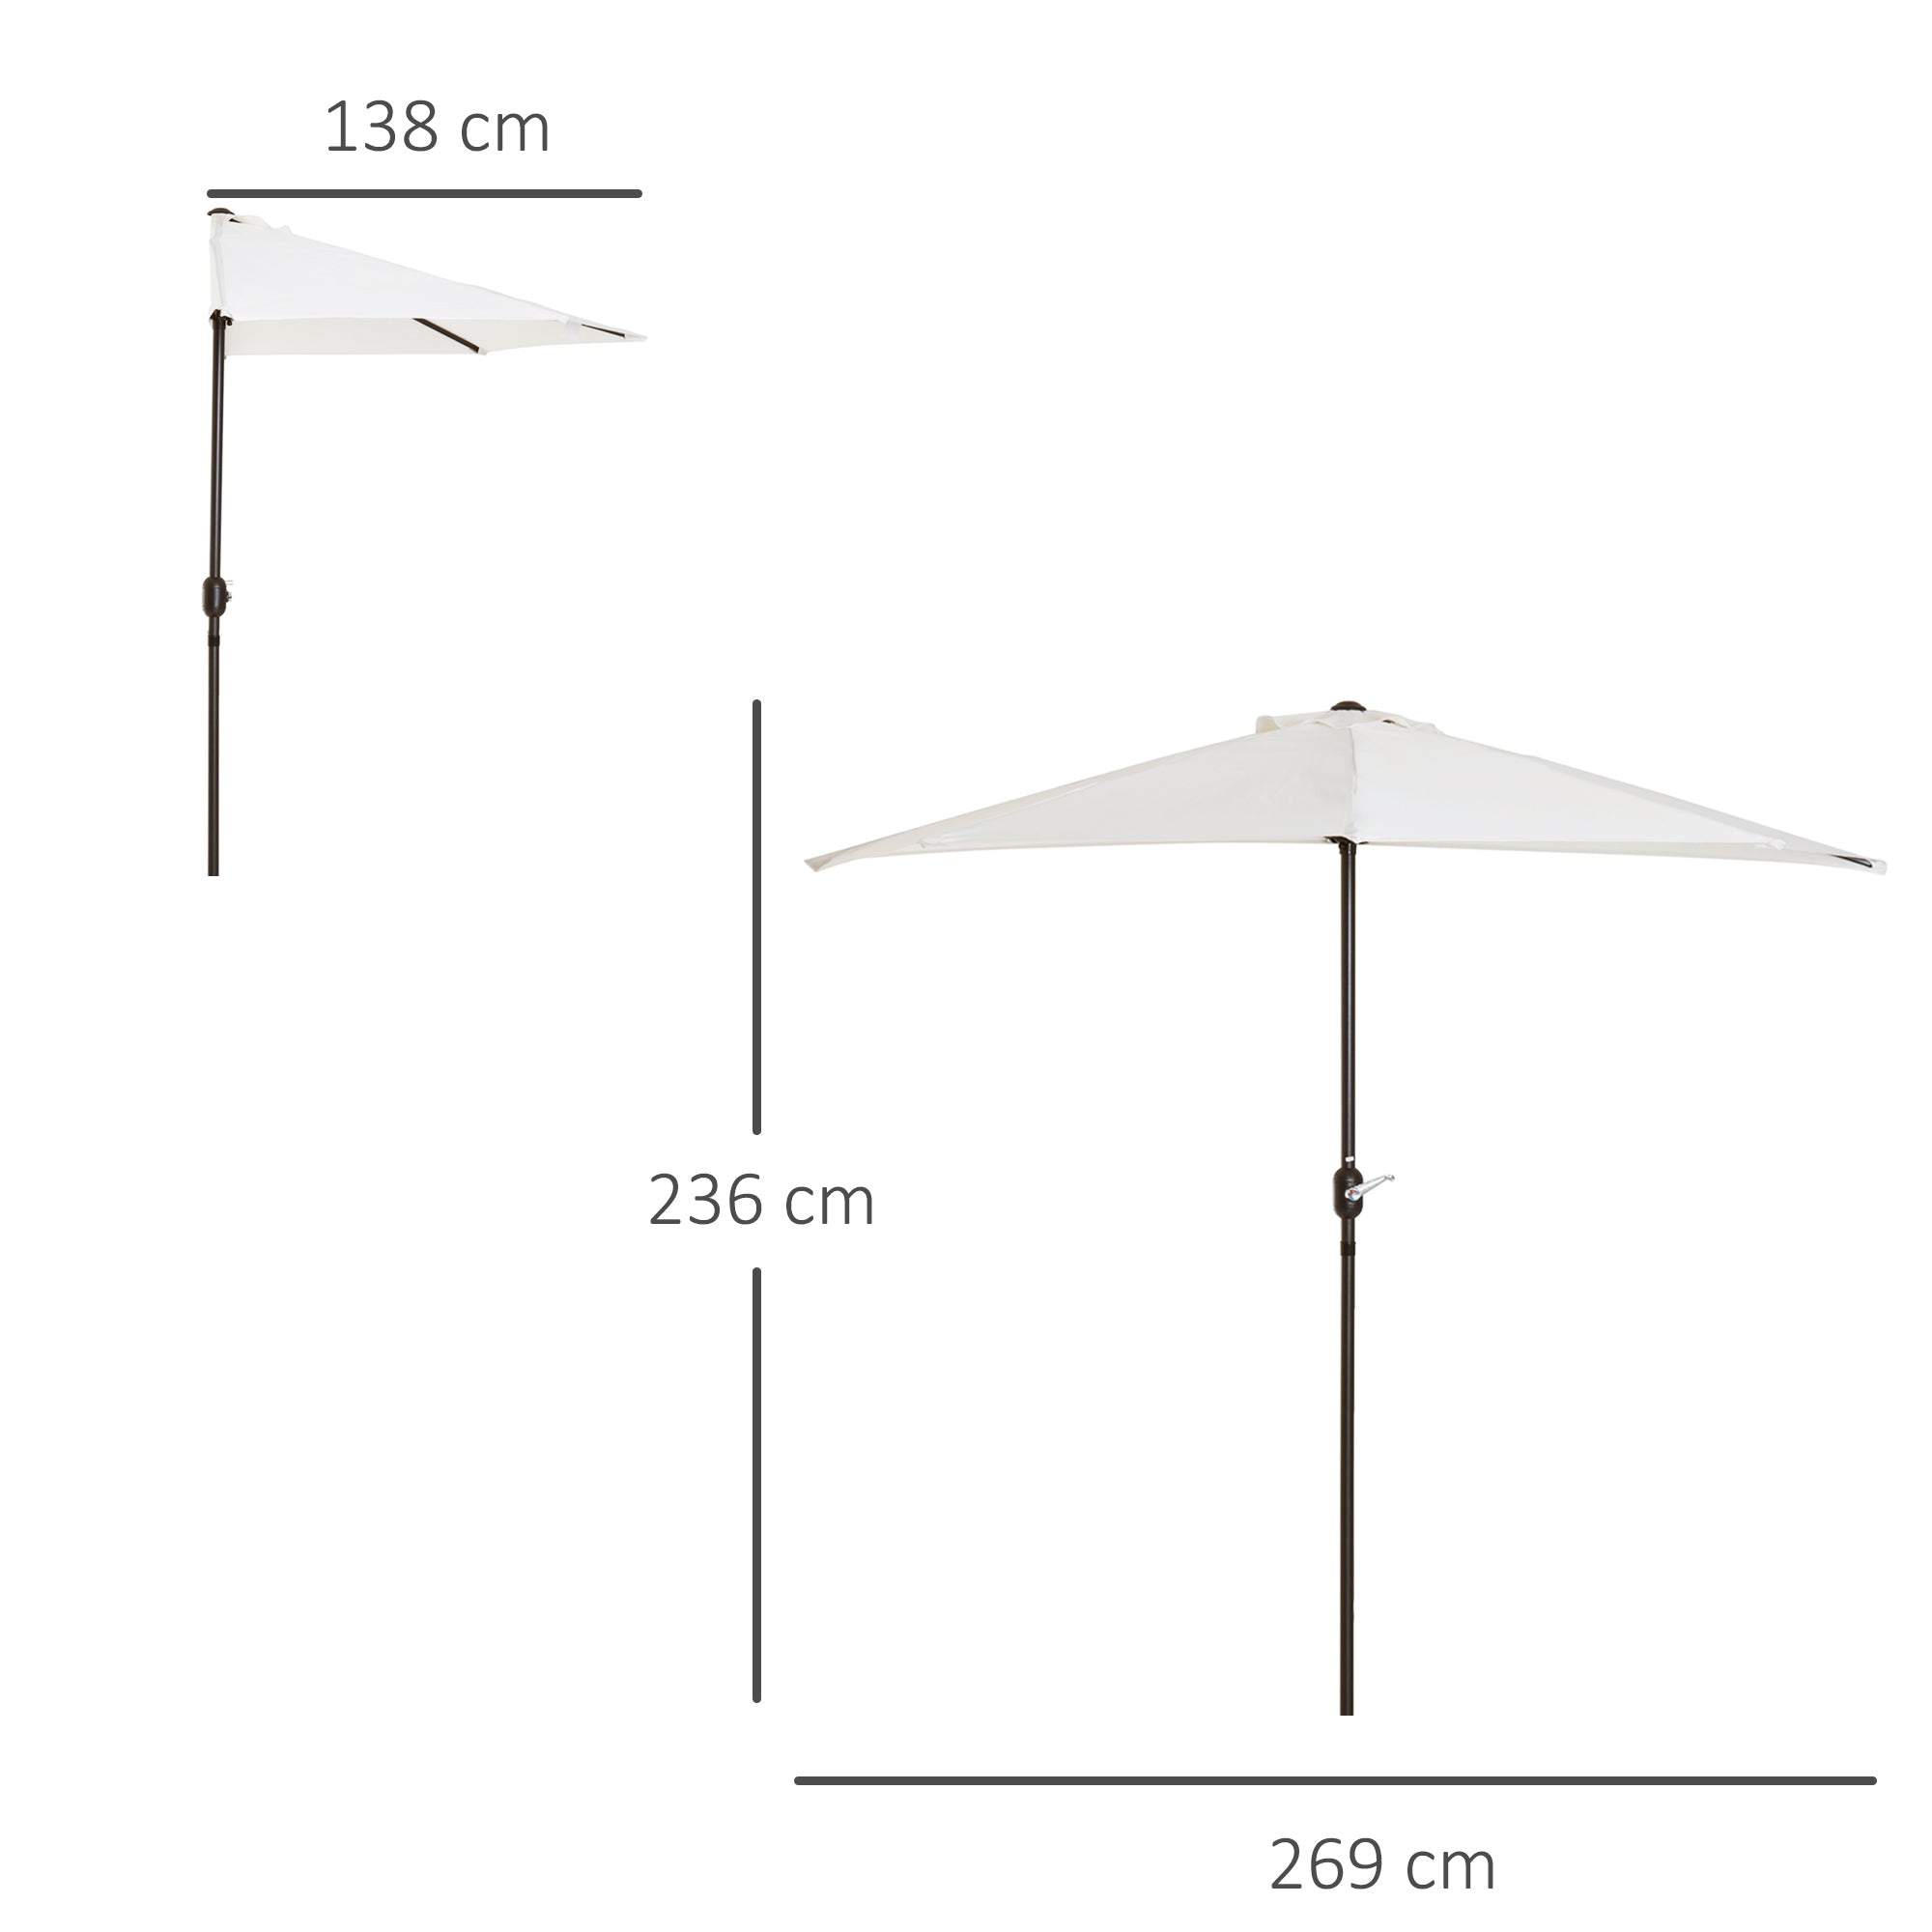 2.7m Balcony Half Parasol 5 Steel Ribs Construction Garden Outdoor Umbrella Cream White-2